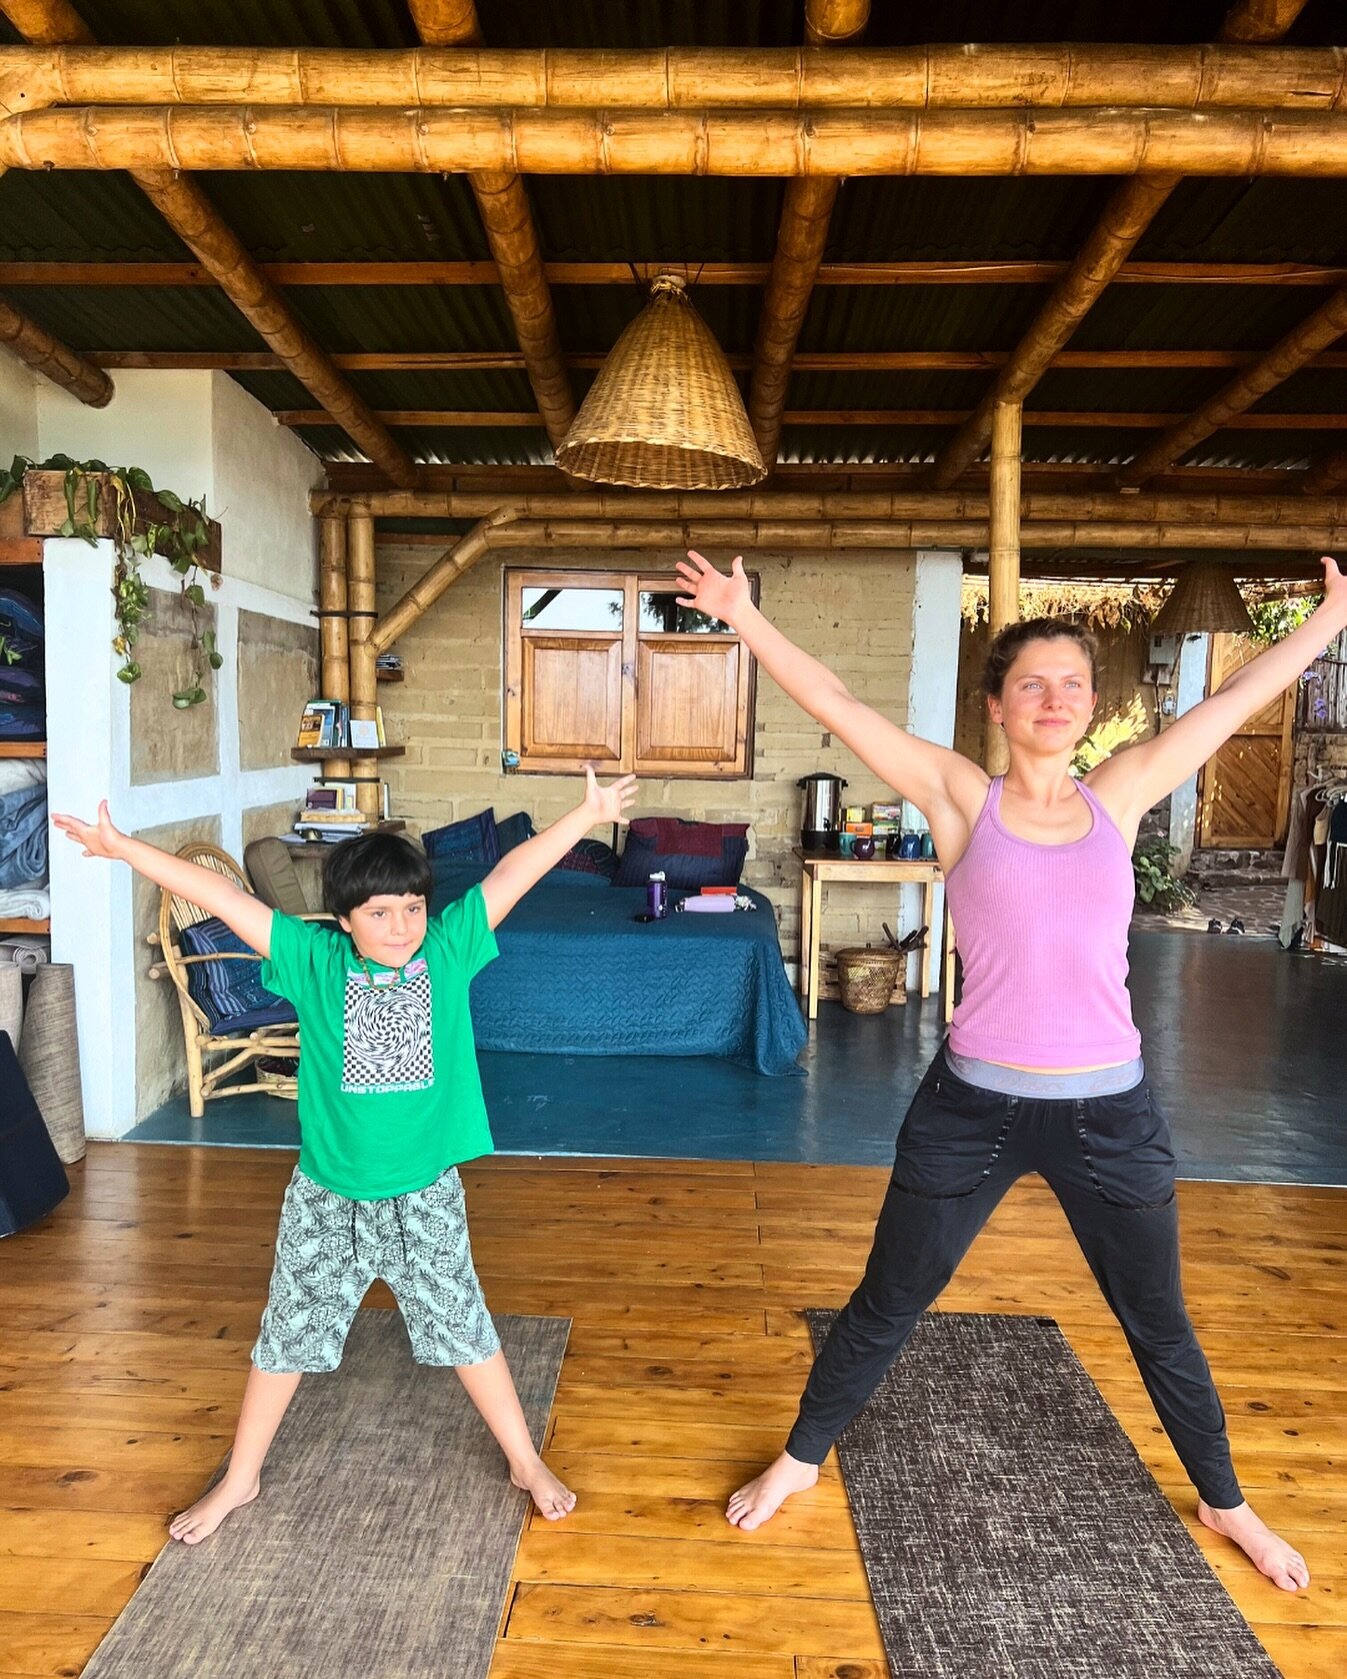 Yoga is always better together 💗🫶✨

➡️ shamana-atitlan.com/shamana-yoga-teacher-training

#ShamanaYTT #meaningofyoga #yogatransforms #community #shamanacommunity #TransformThroughYoga #YTT #yogateachertraining #guatemalaretreats #lakeatitlanretreat